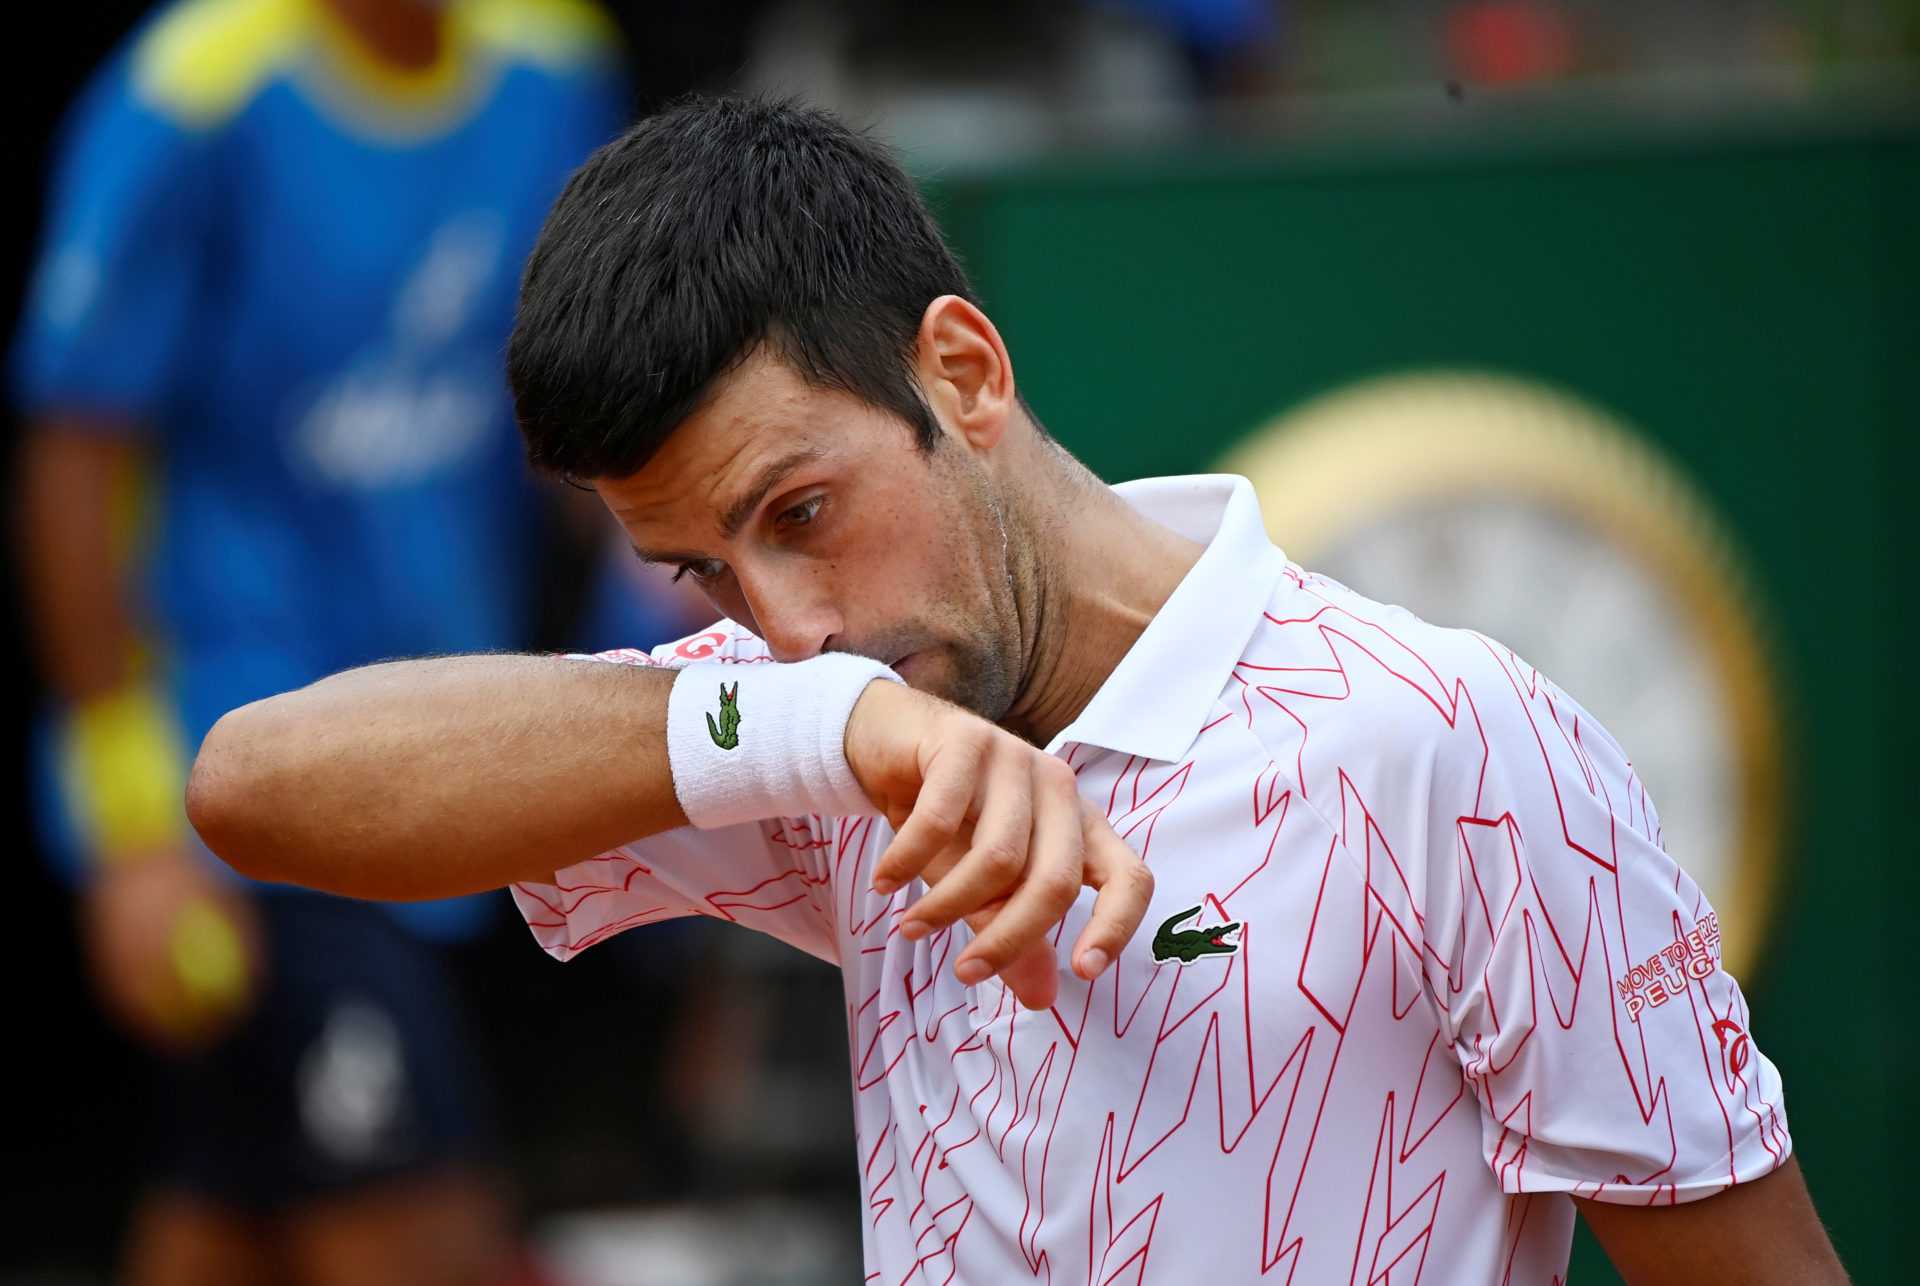 "Je le referai probablement" - Novak Djokovic sur Perdre son calme pendant les matchs